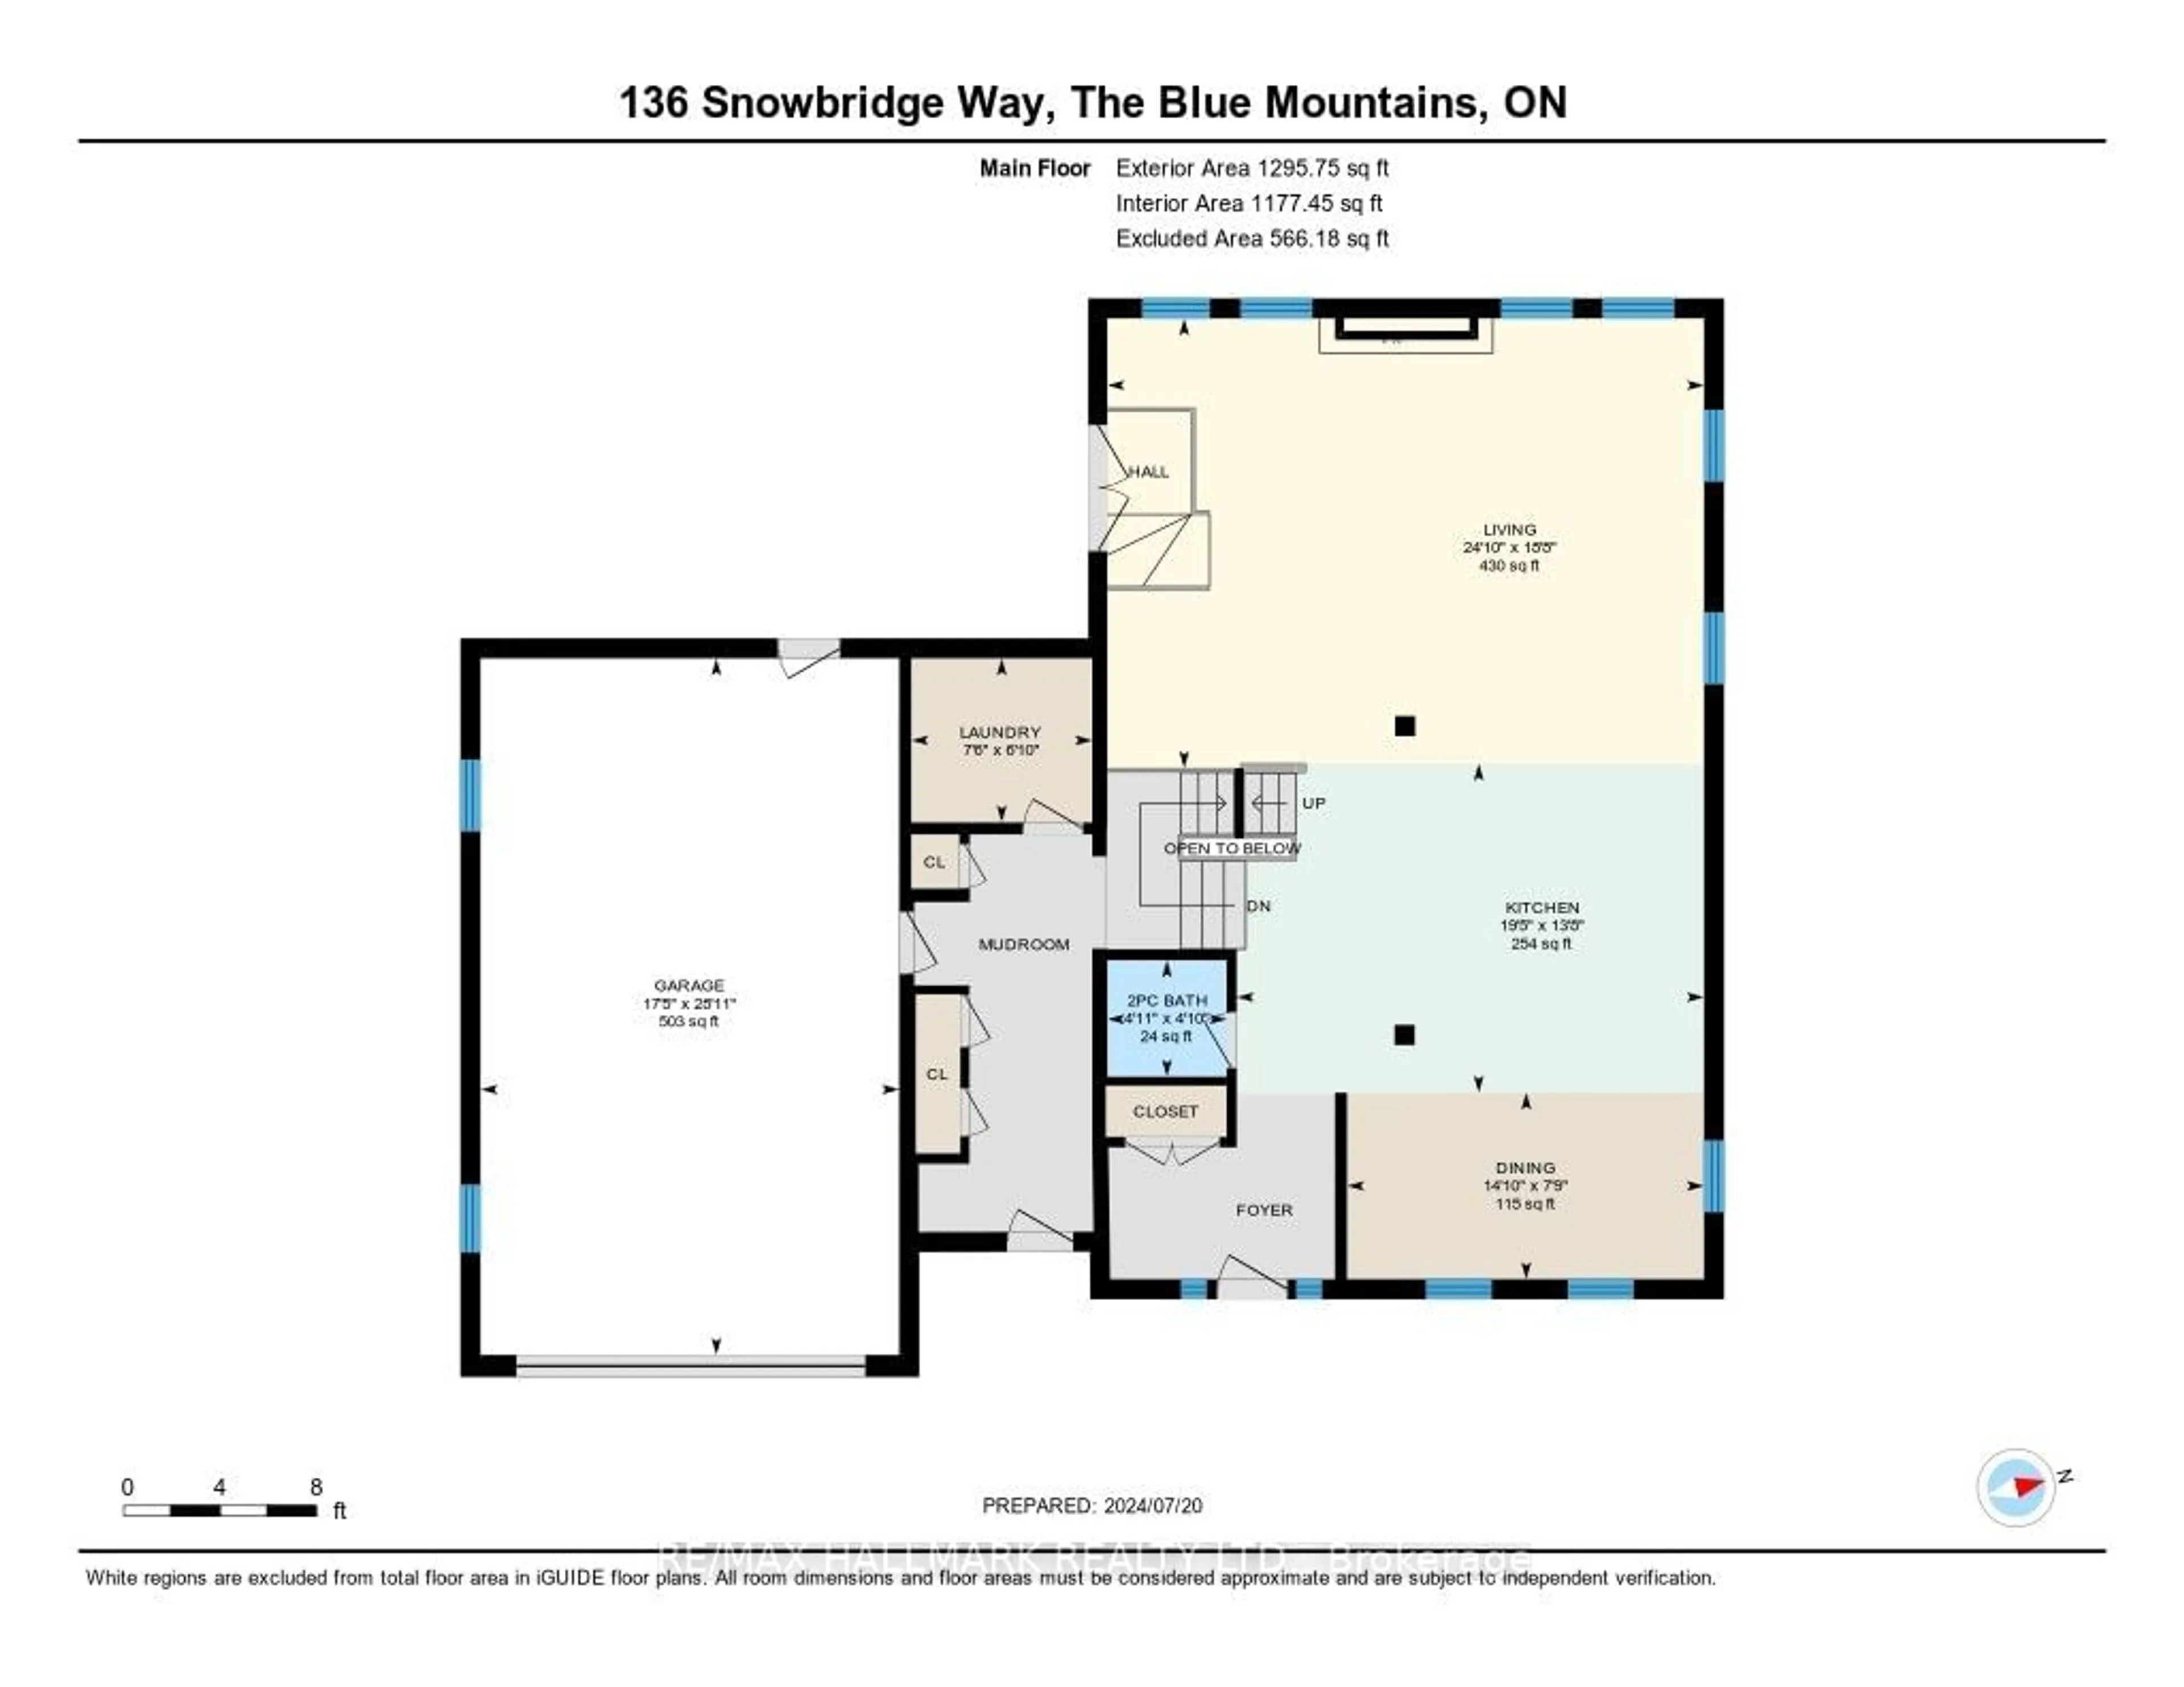 Floor plan for 136 Snowbridge Way, Blue Mountains Ontario L9Y 0V1